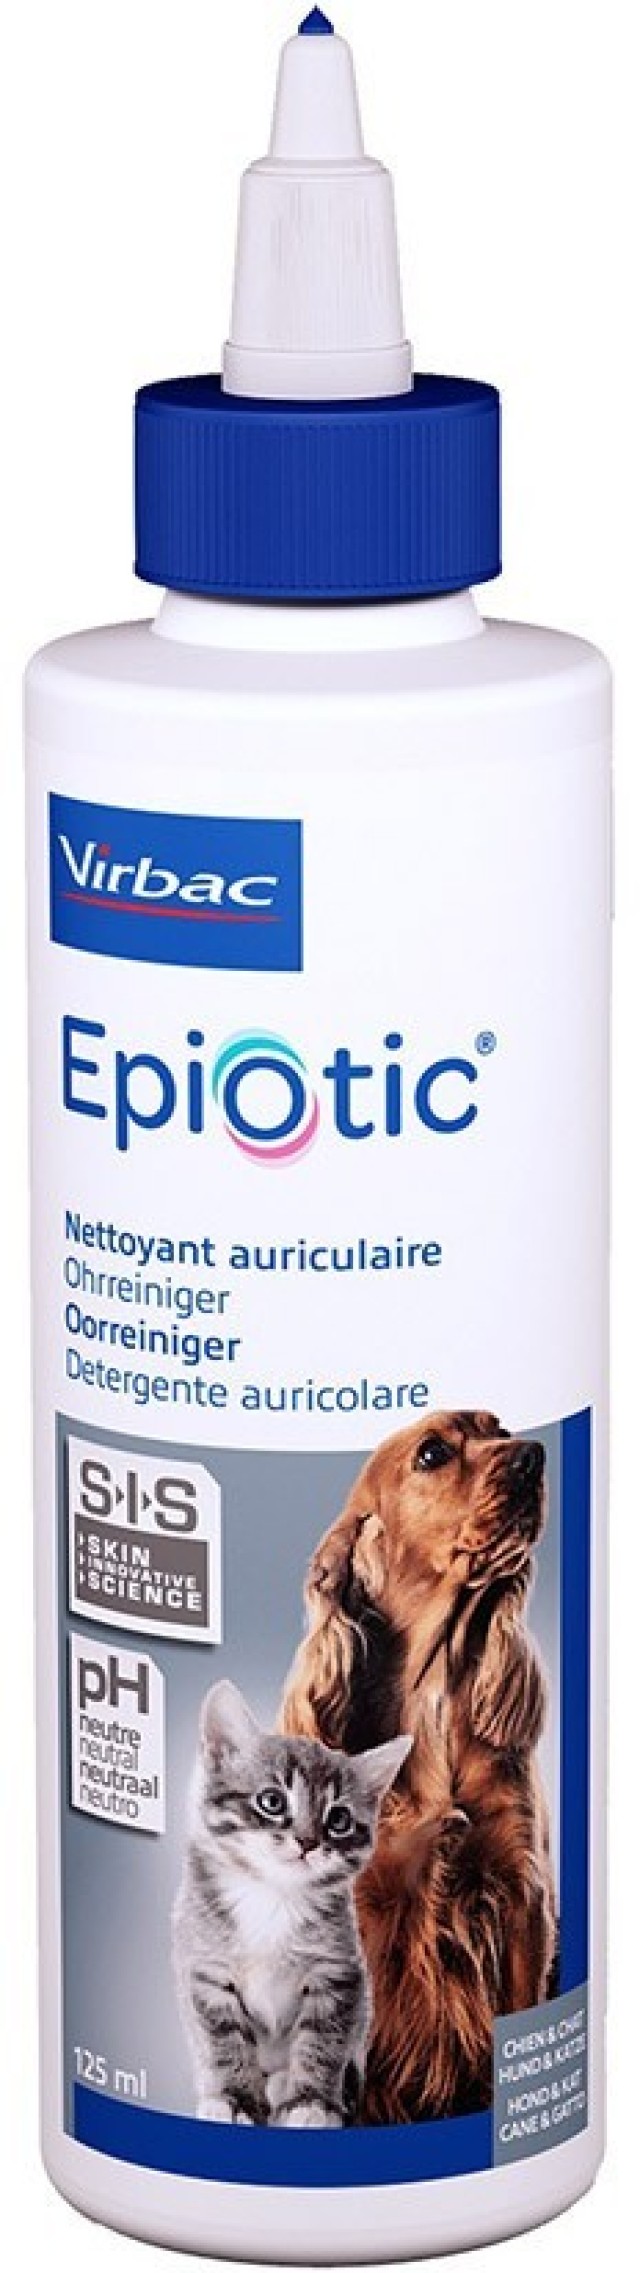 Virbac Epiotic Solution Καθαριστικό Αυτιών σε Σταγόνες για Γάτες & Σκύλους 125ml product photo